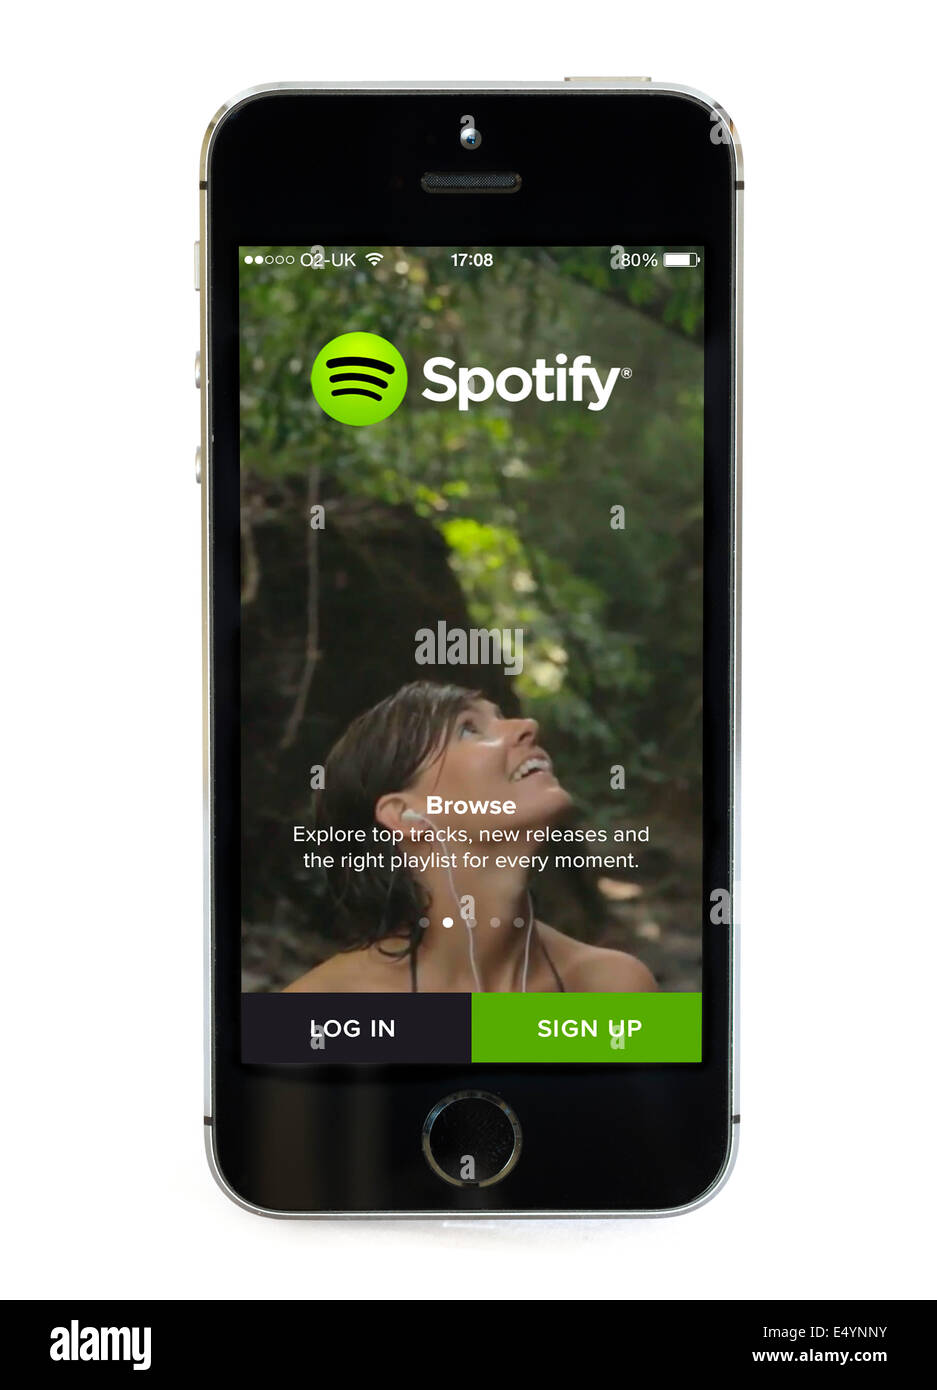 Spotify immagini e fotografie stock ad alta risoluzione - Alamy